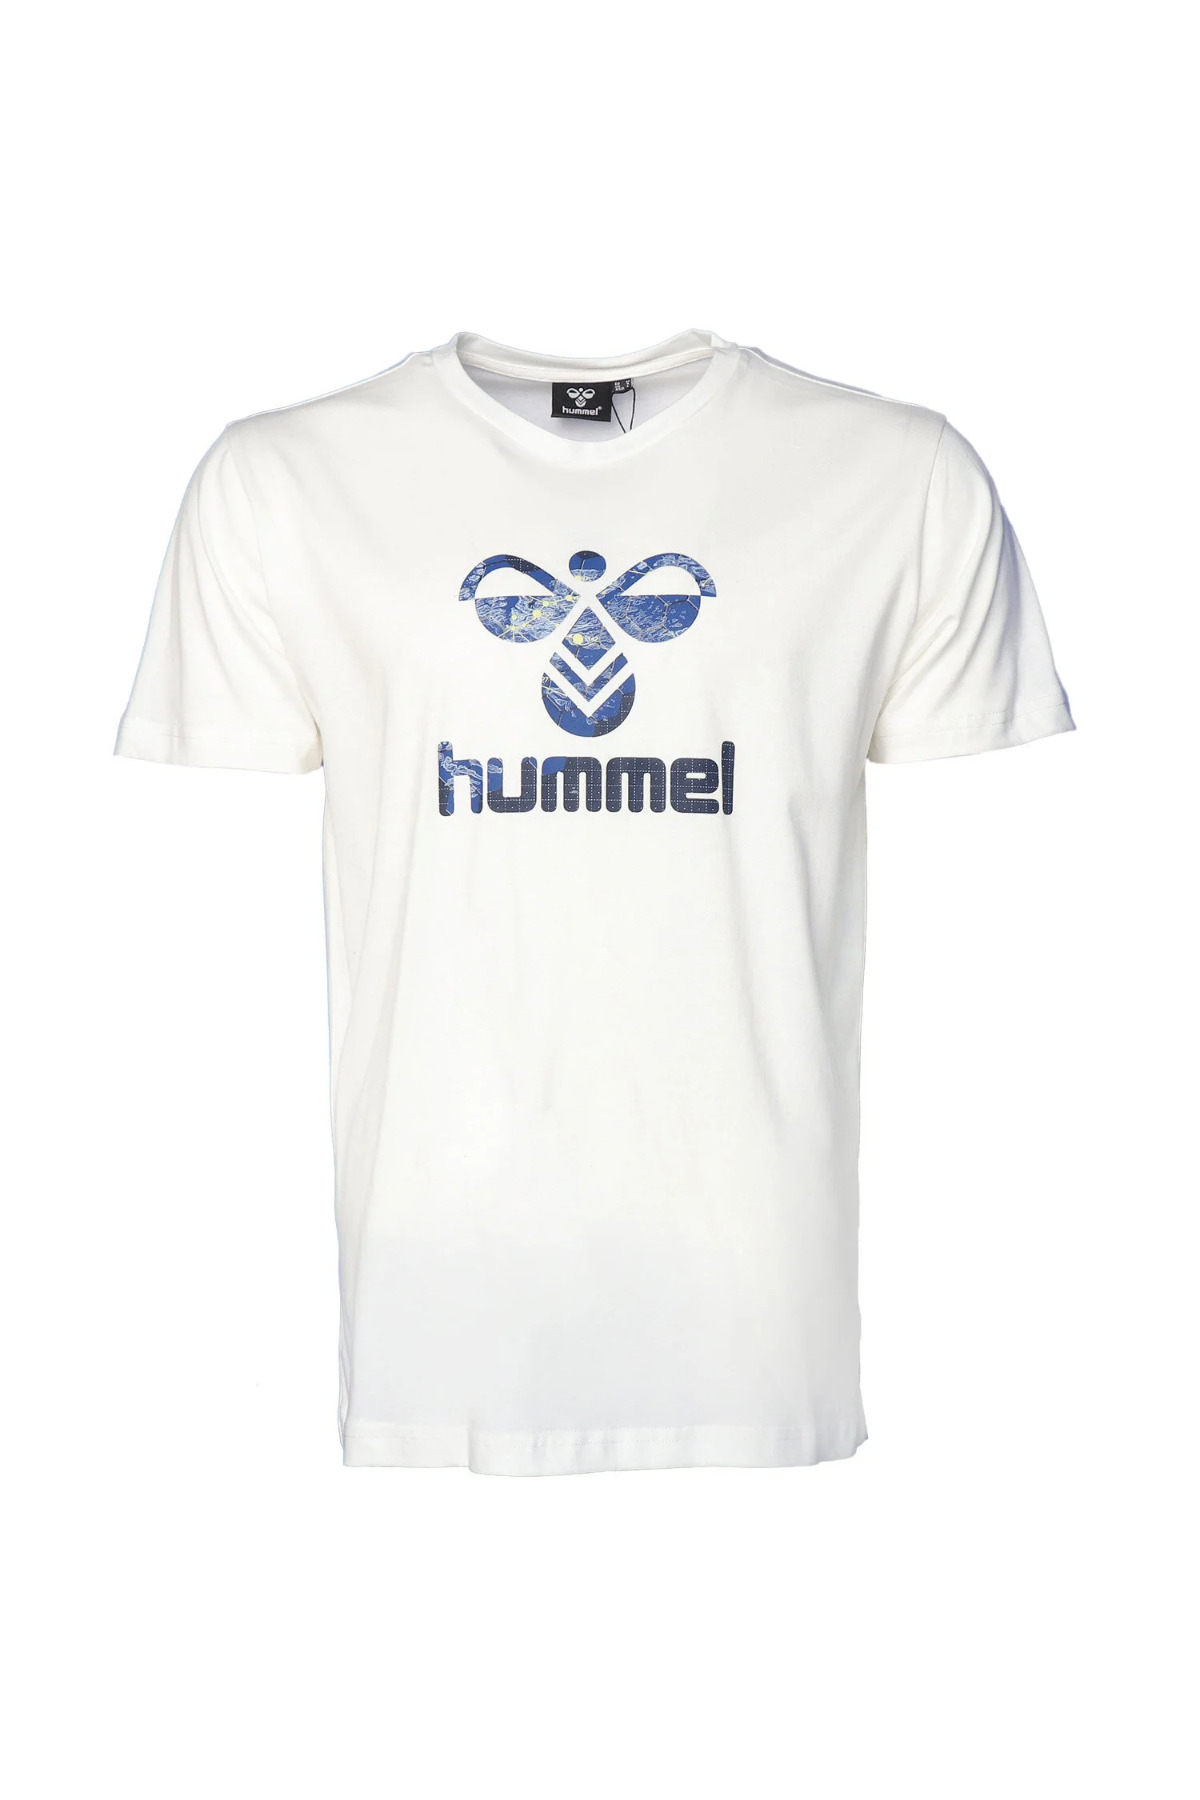 HUMMEL تی شرت یقه خدمه سفید مردانه Dante